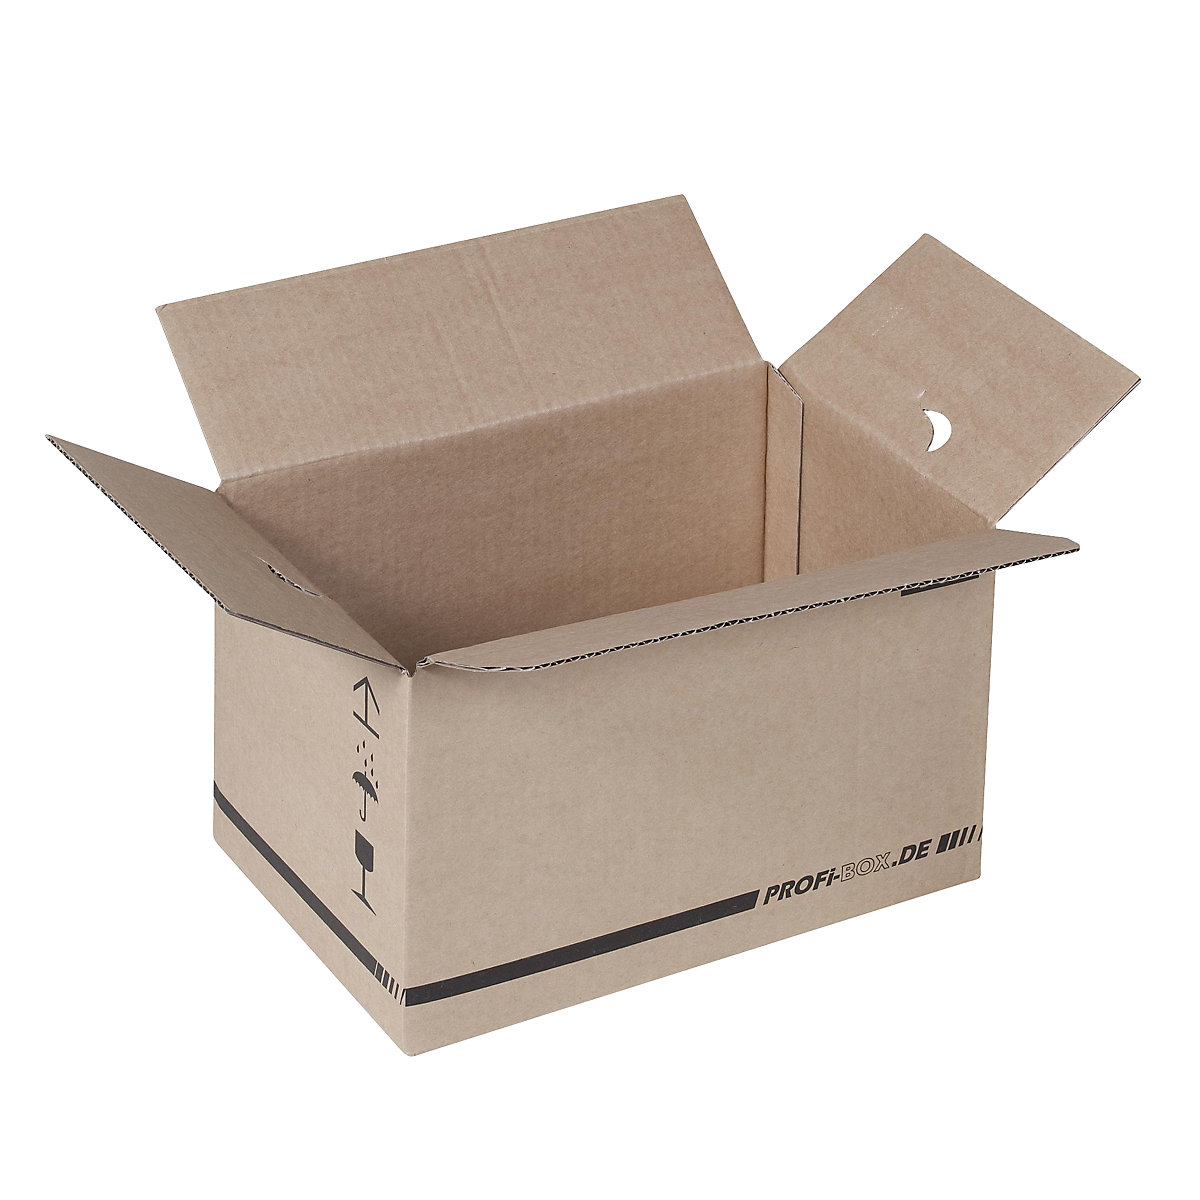 Profi-Boxen, aus 1-welliger Pappe, FEFCO 0701, Innenmaße 284 x 184 x 167 mm, VE 50 Stk-11